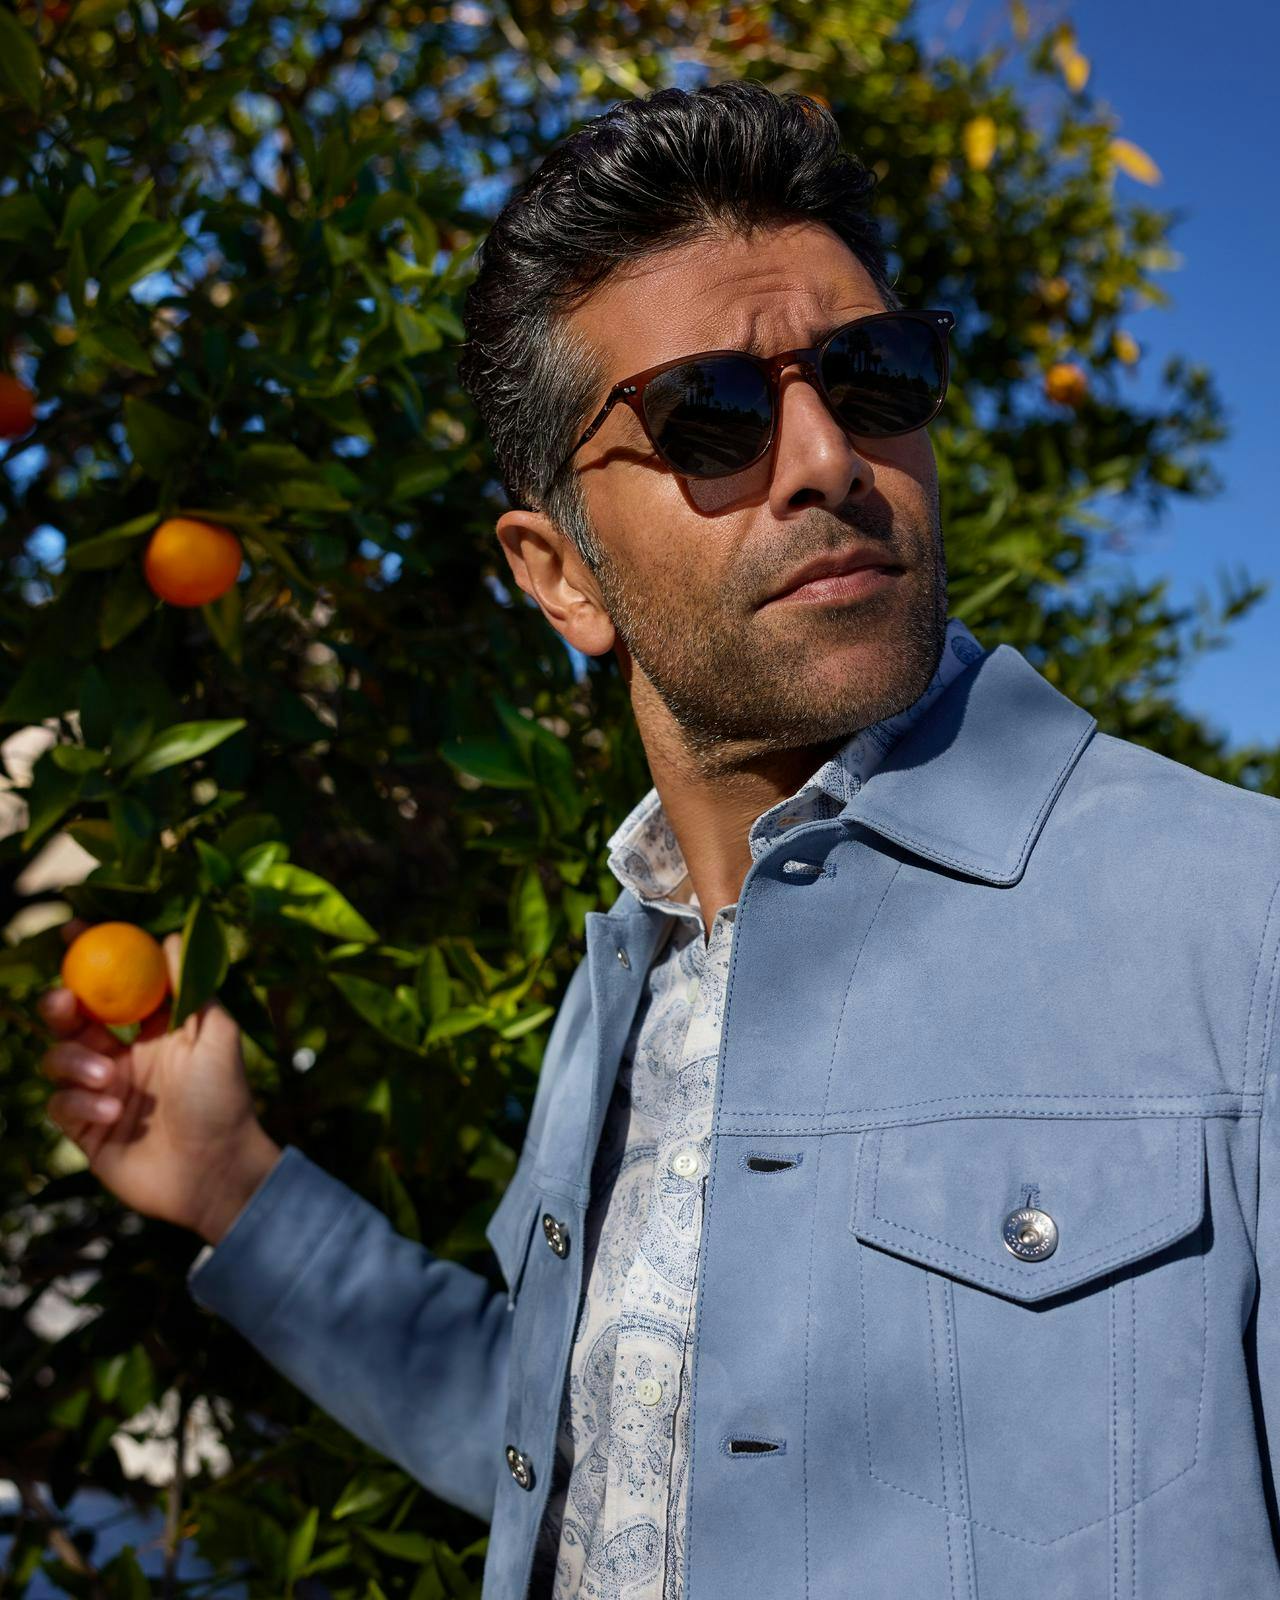 gros plan d'un homme portant une veste bleu clair tenant une orange